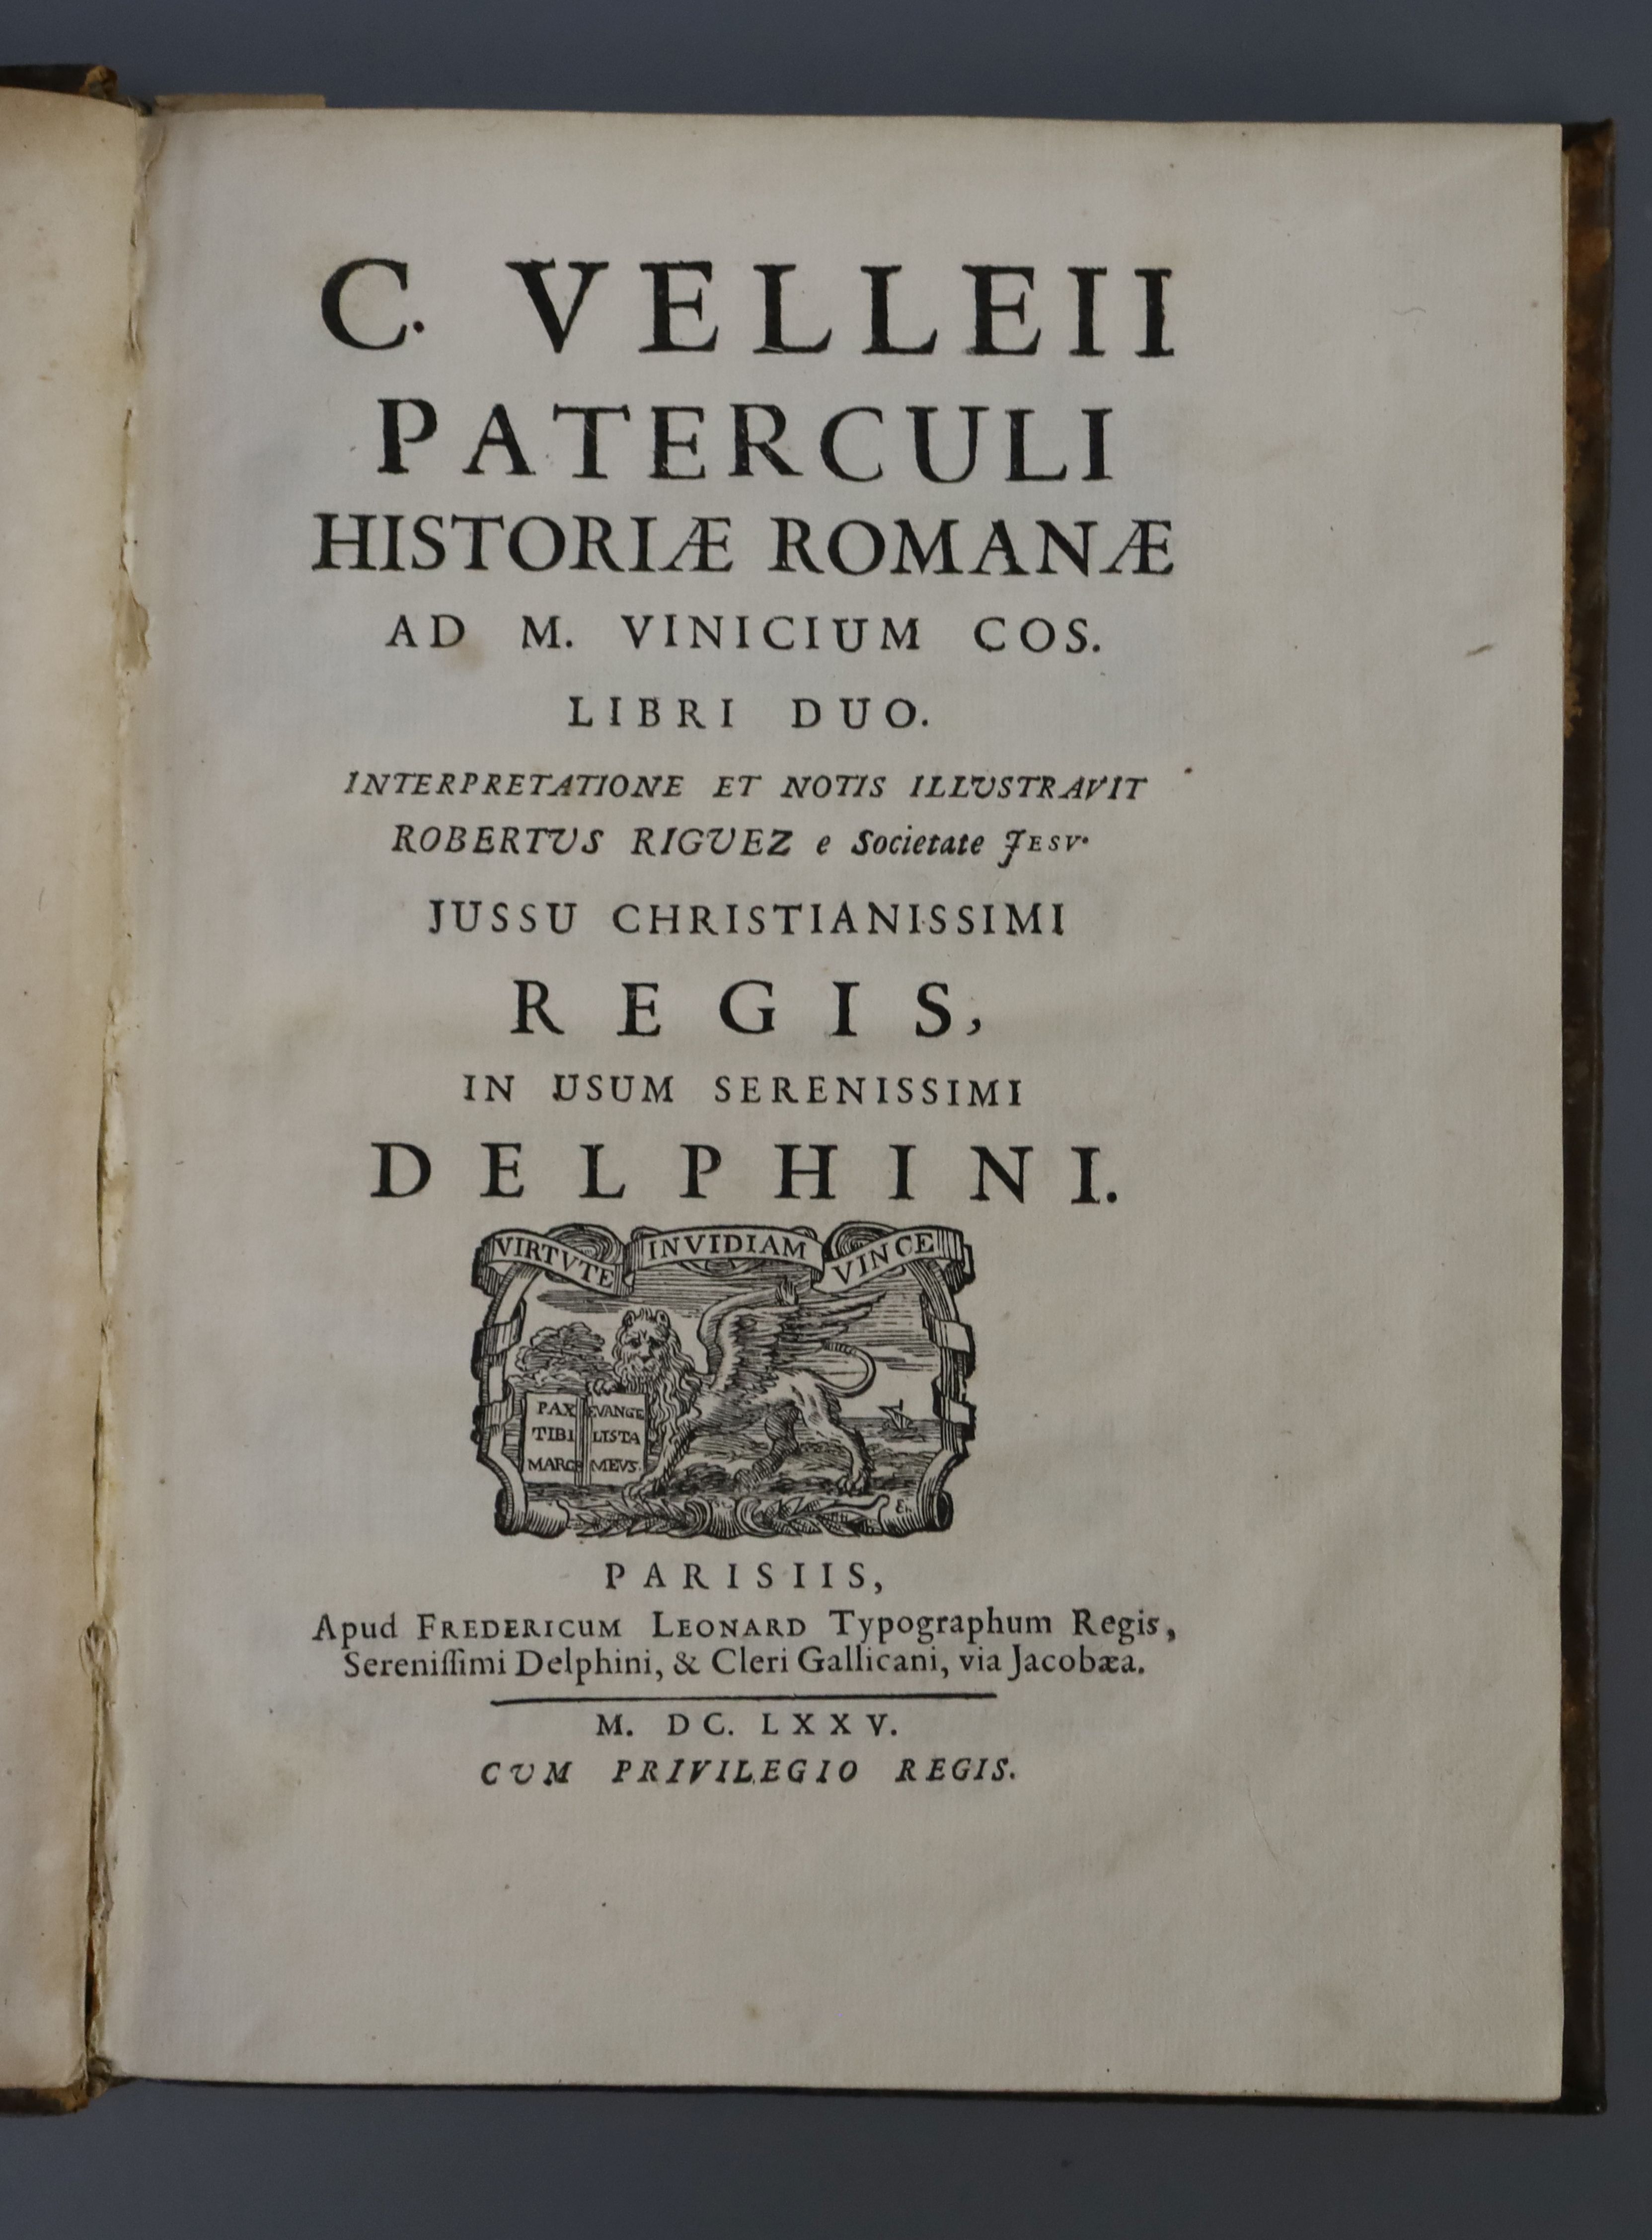 Velleius Paterculus - C. Velleii Paterculi historiae Romanae and M. Vinicium cos, qto, calf, lacking